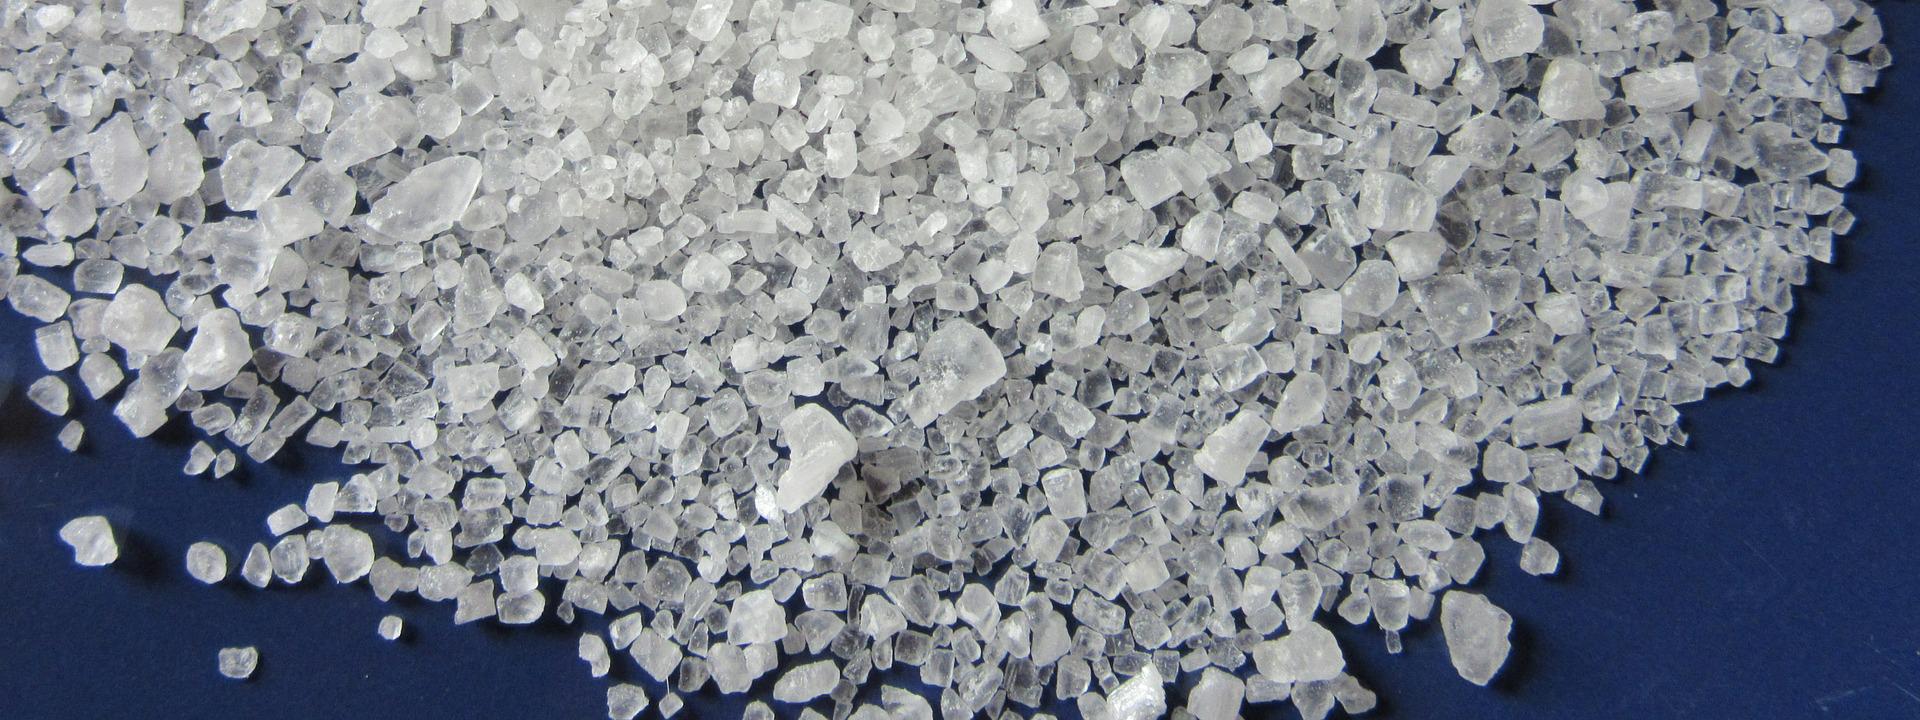 Steinsalz erhält man in den verschiedensten Varianten. Die Farbe des Steinsalzes hängt von der Zusammensetzung der Spurenelemente und Mineralstoffe sowie mit dem Ursprungsort zusammen. Sie entstehen zudem durch das Raffinieren von Salz.